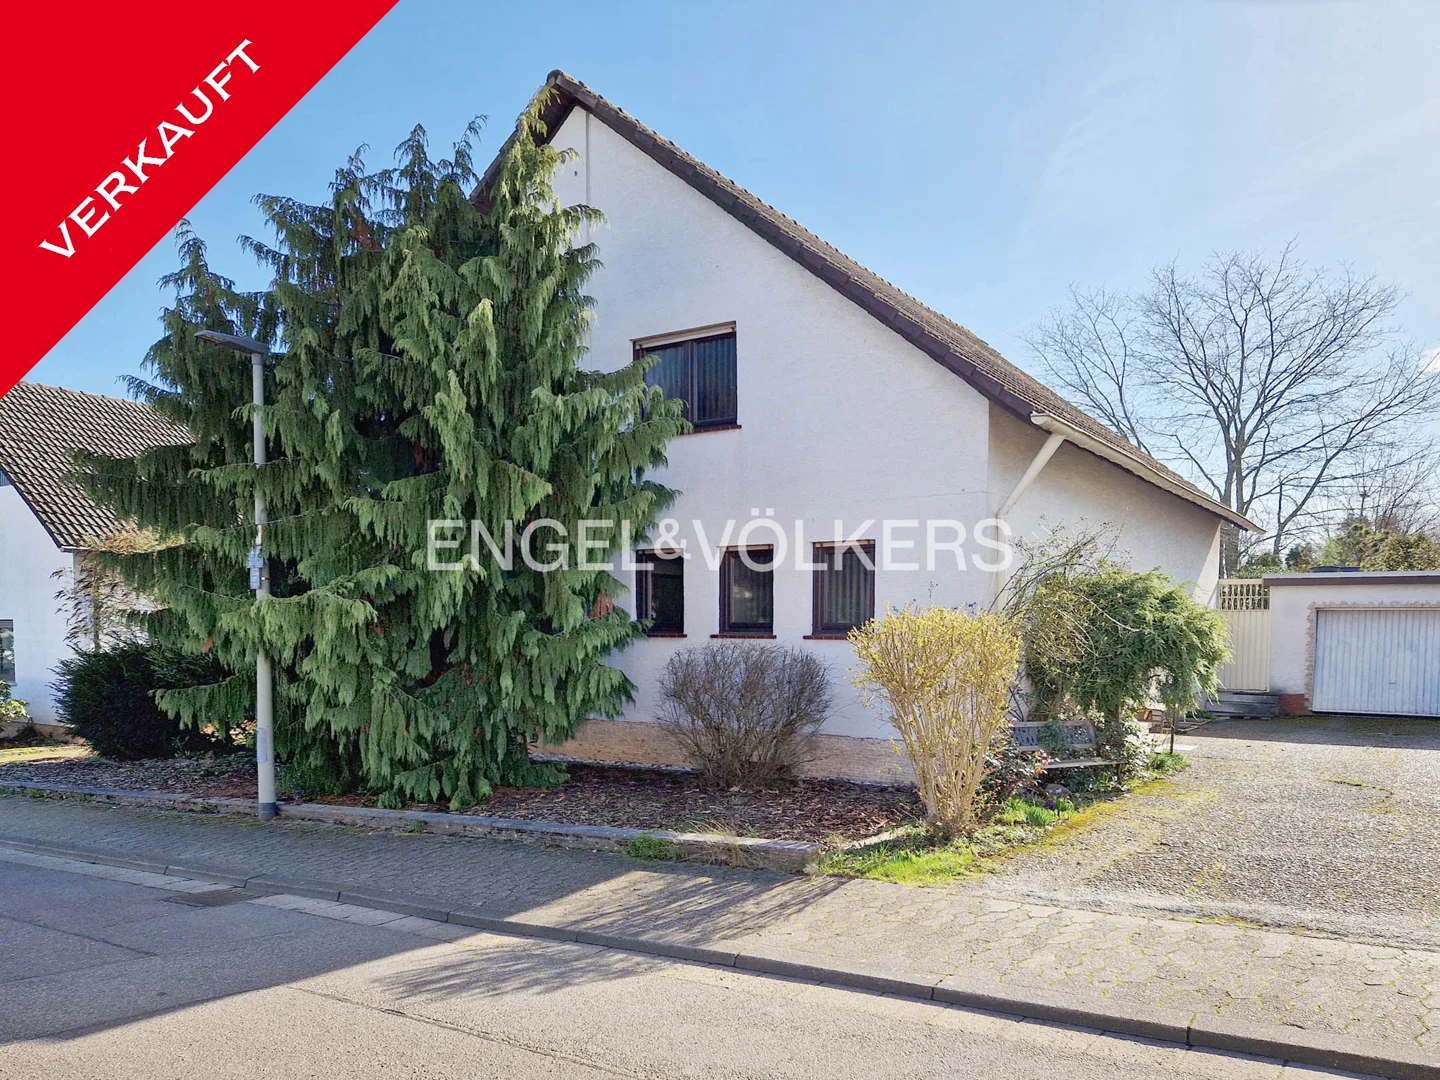 *verkauft* Gepflegtes Ein-/ bis Zweifamilienhaus in Saarlouis-Neuforweiler